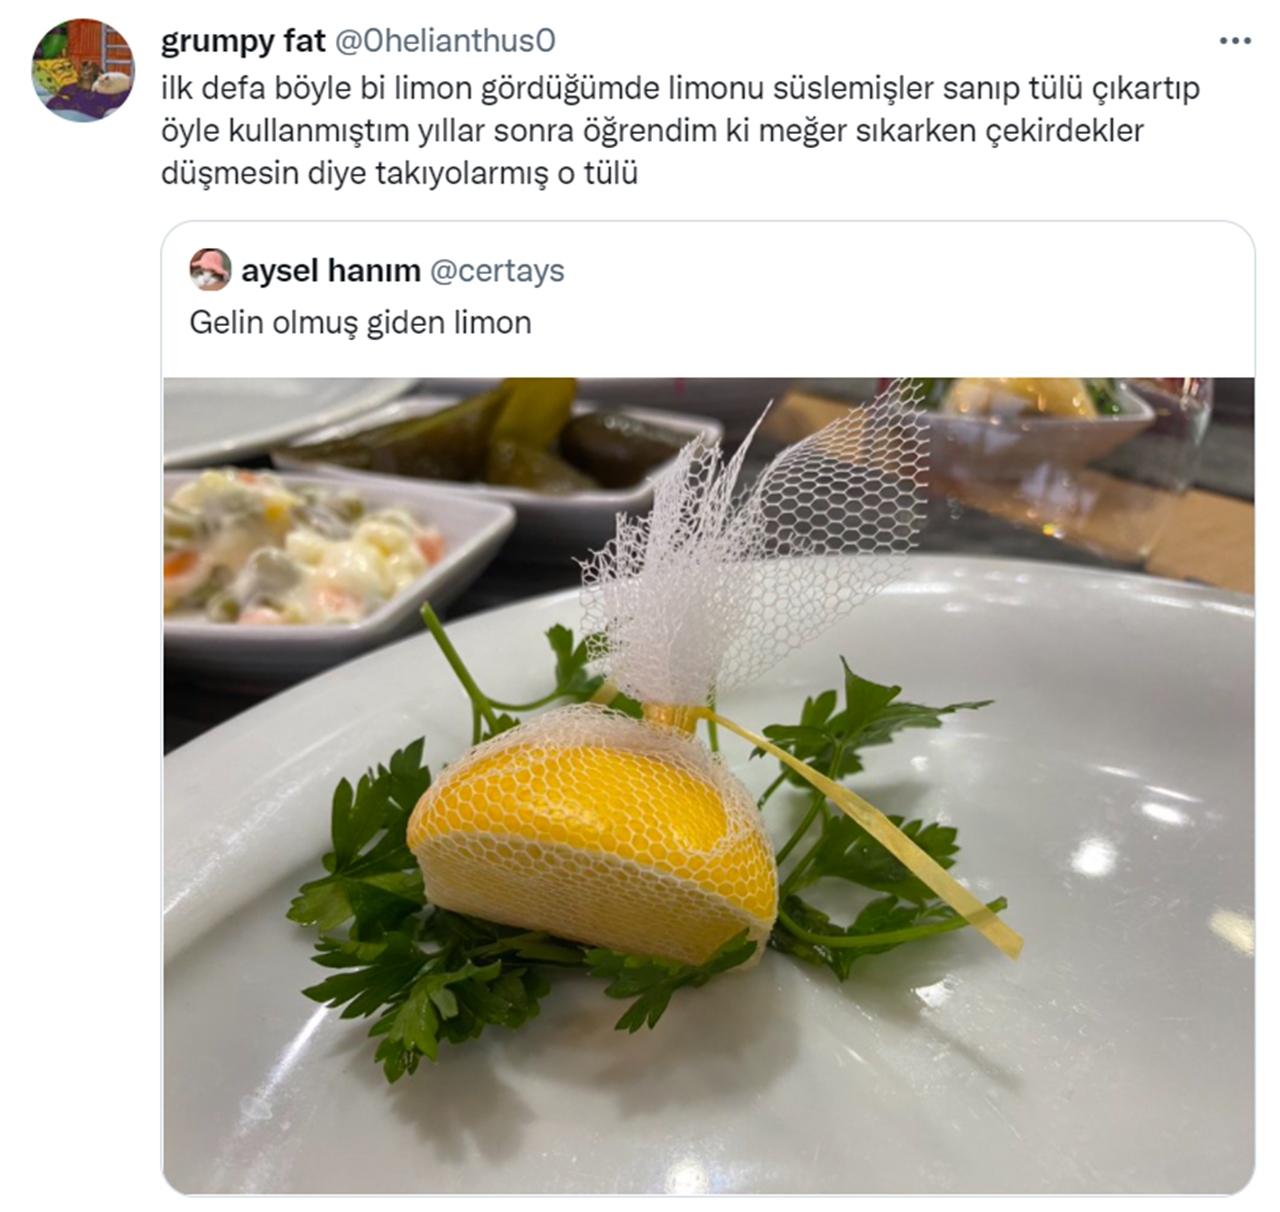 limon tweet